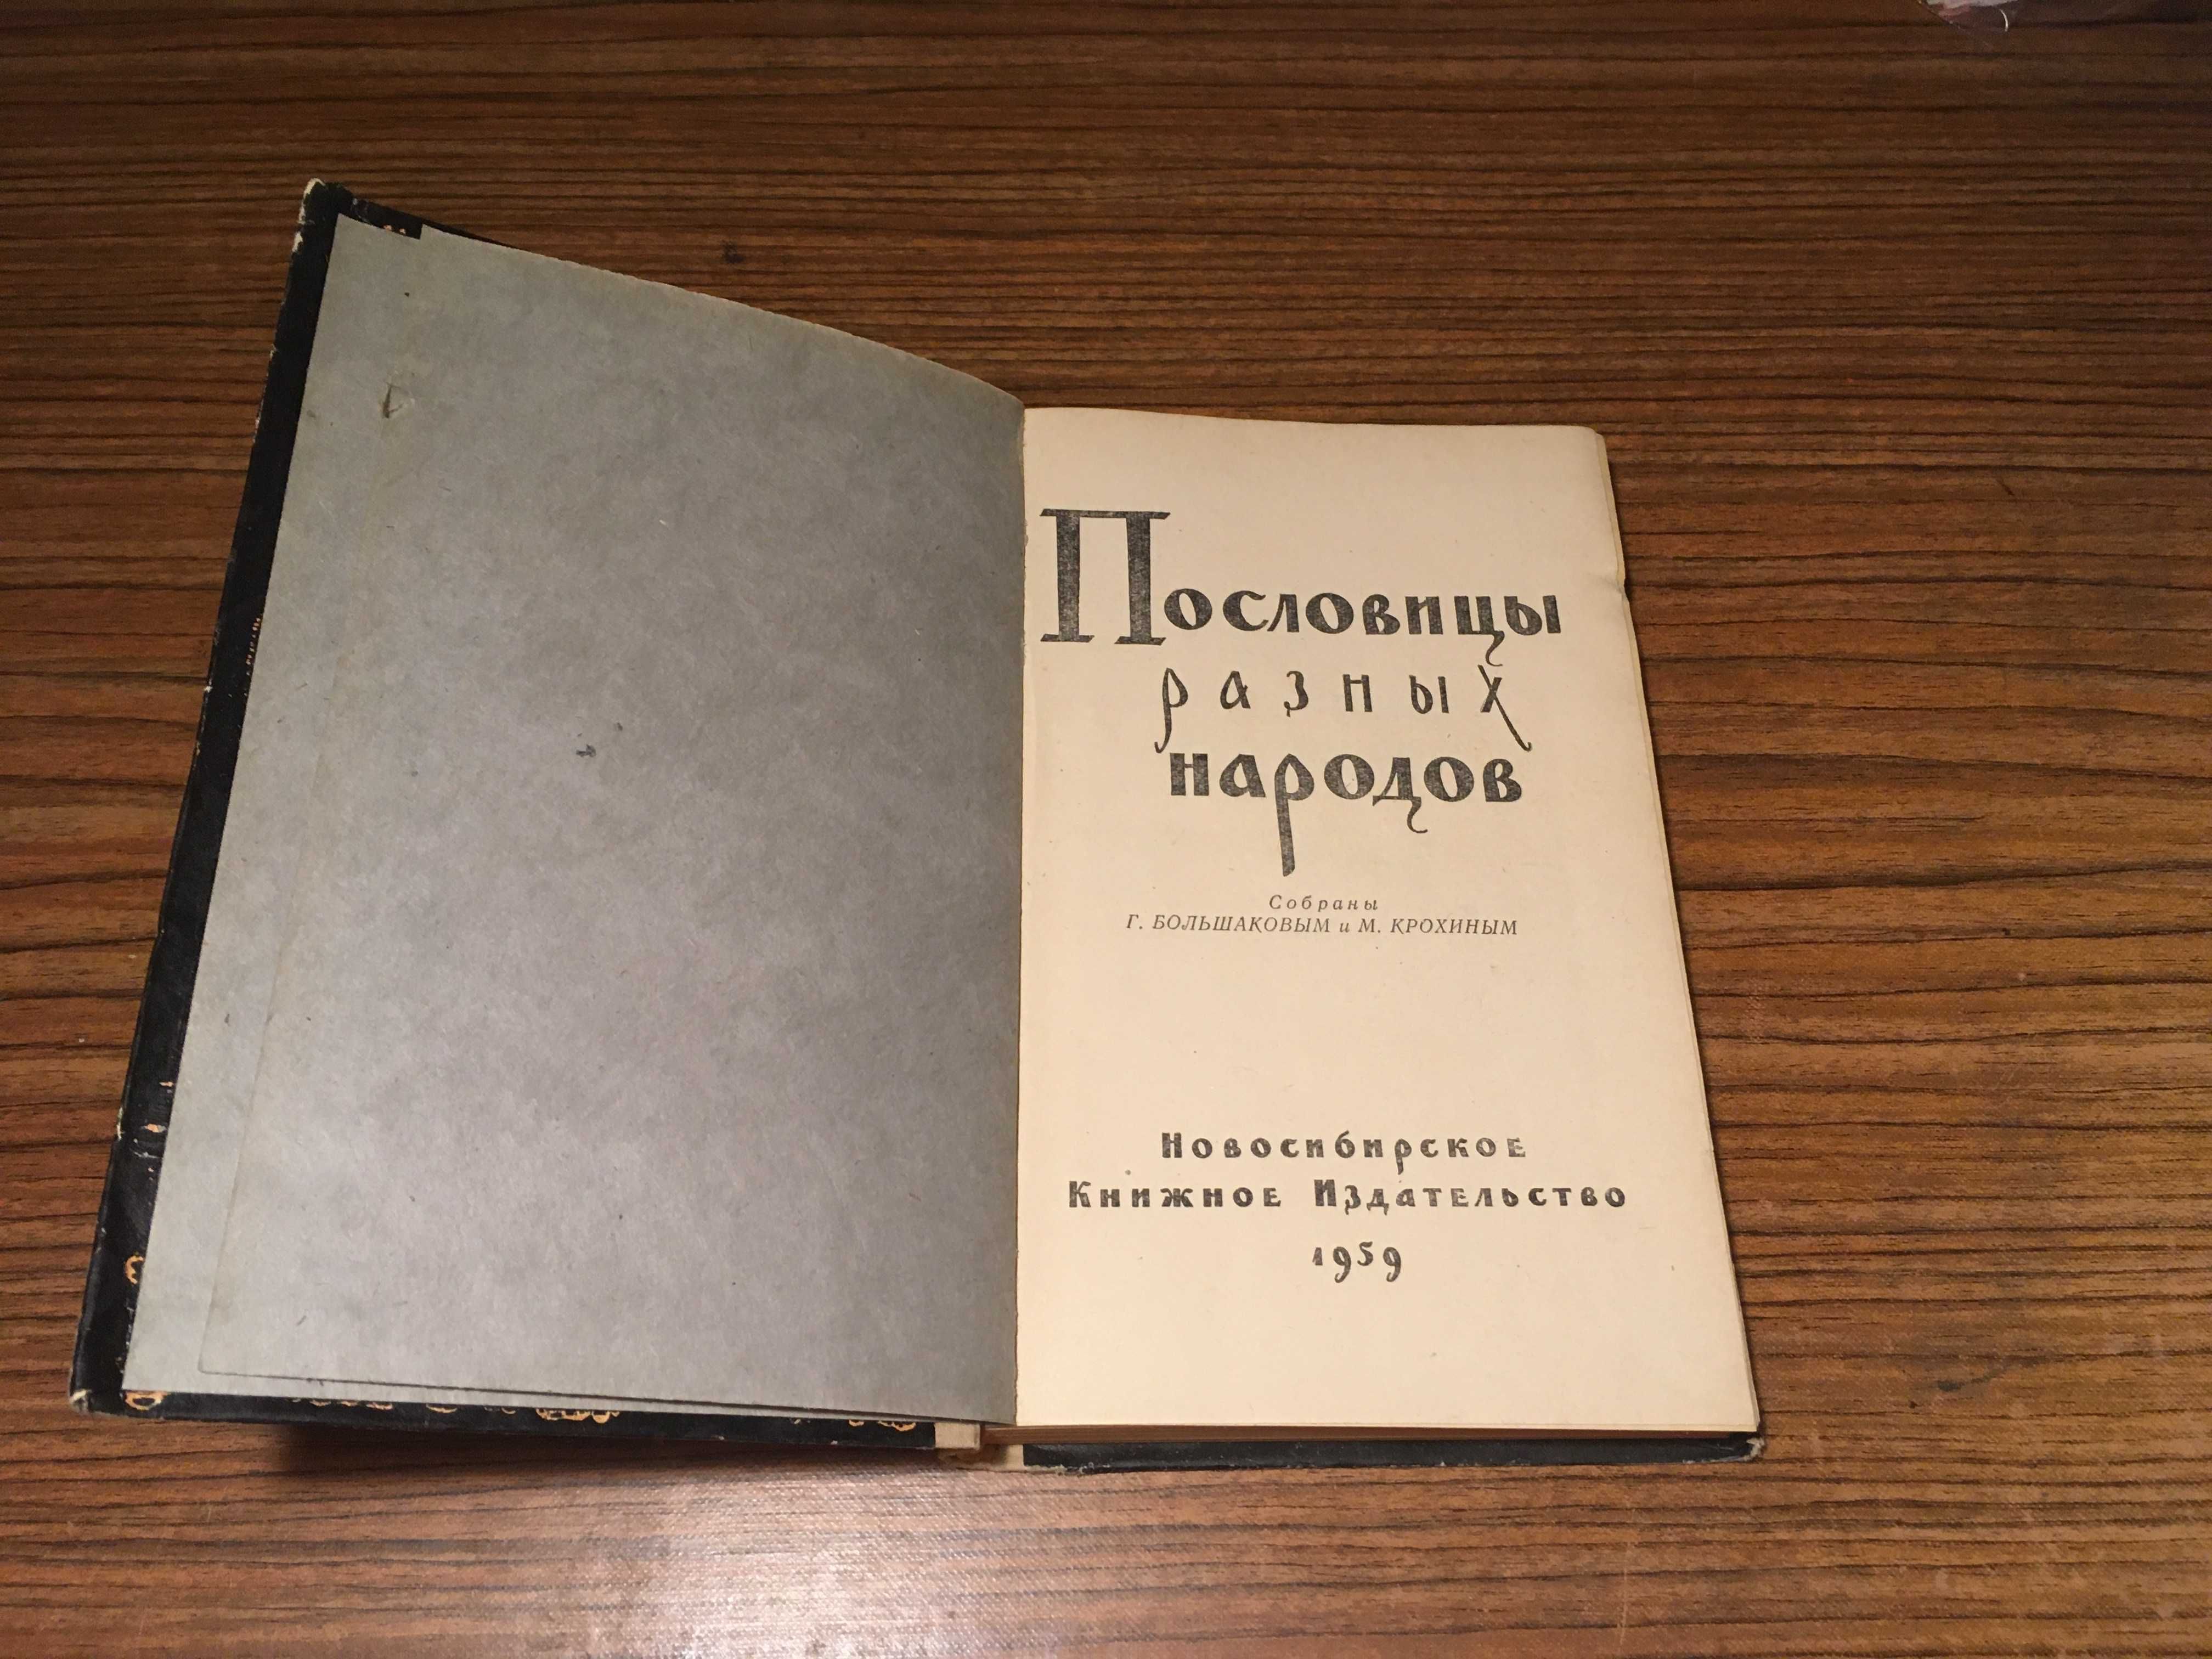 Пословицы разных народов.  1959 г.